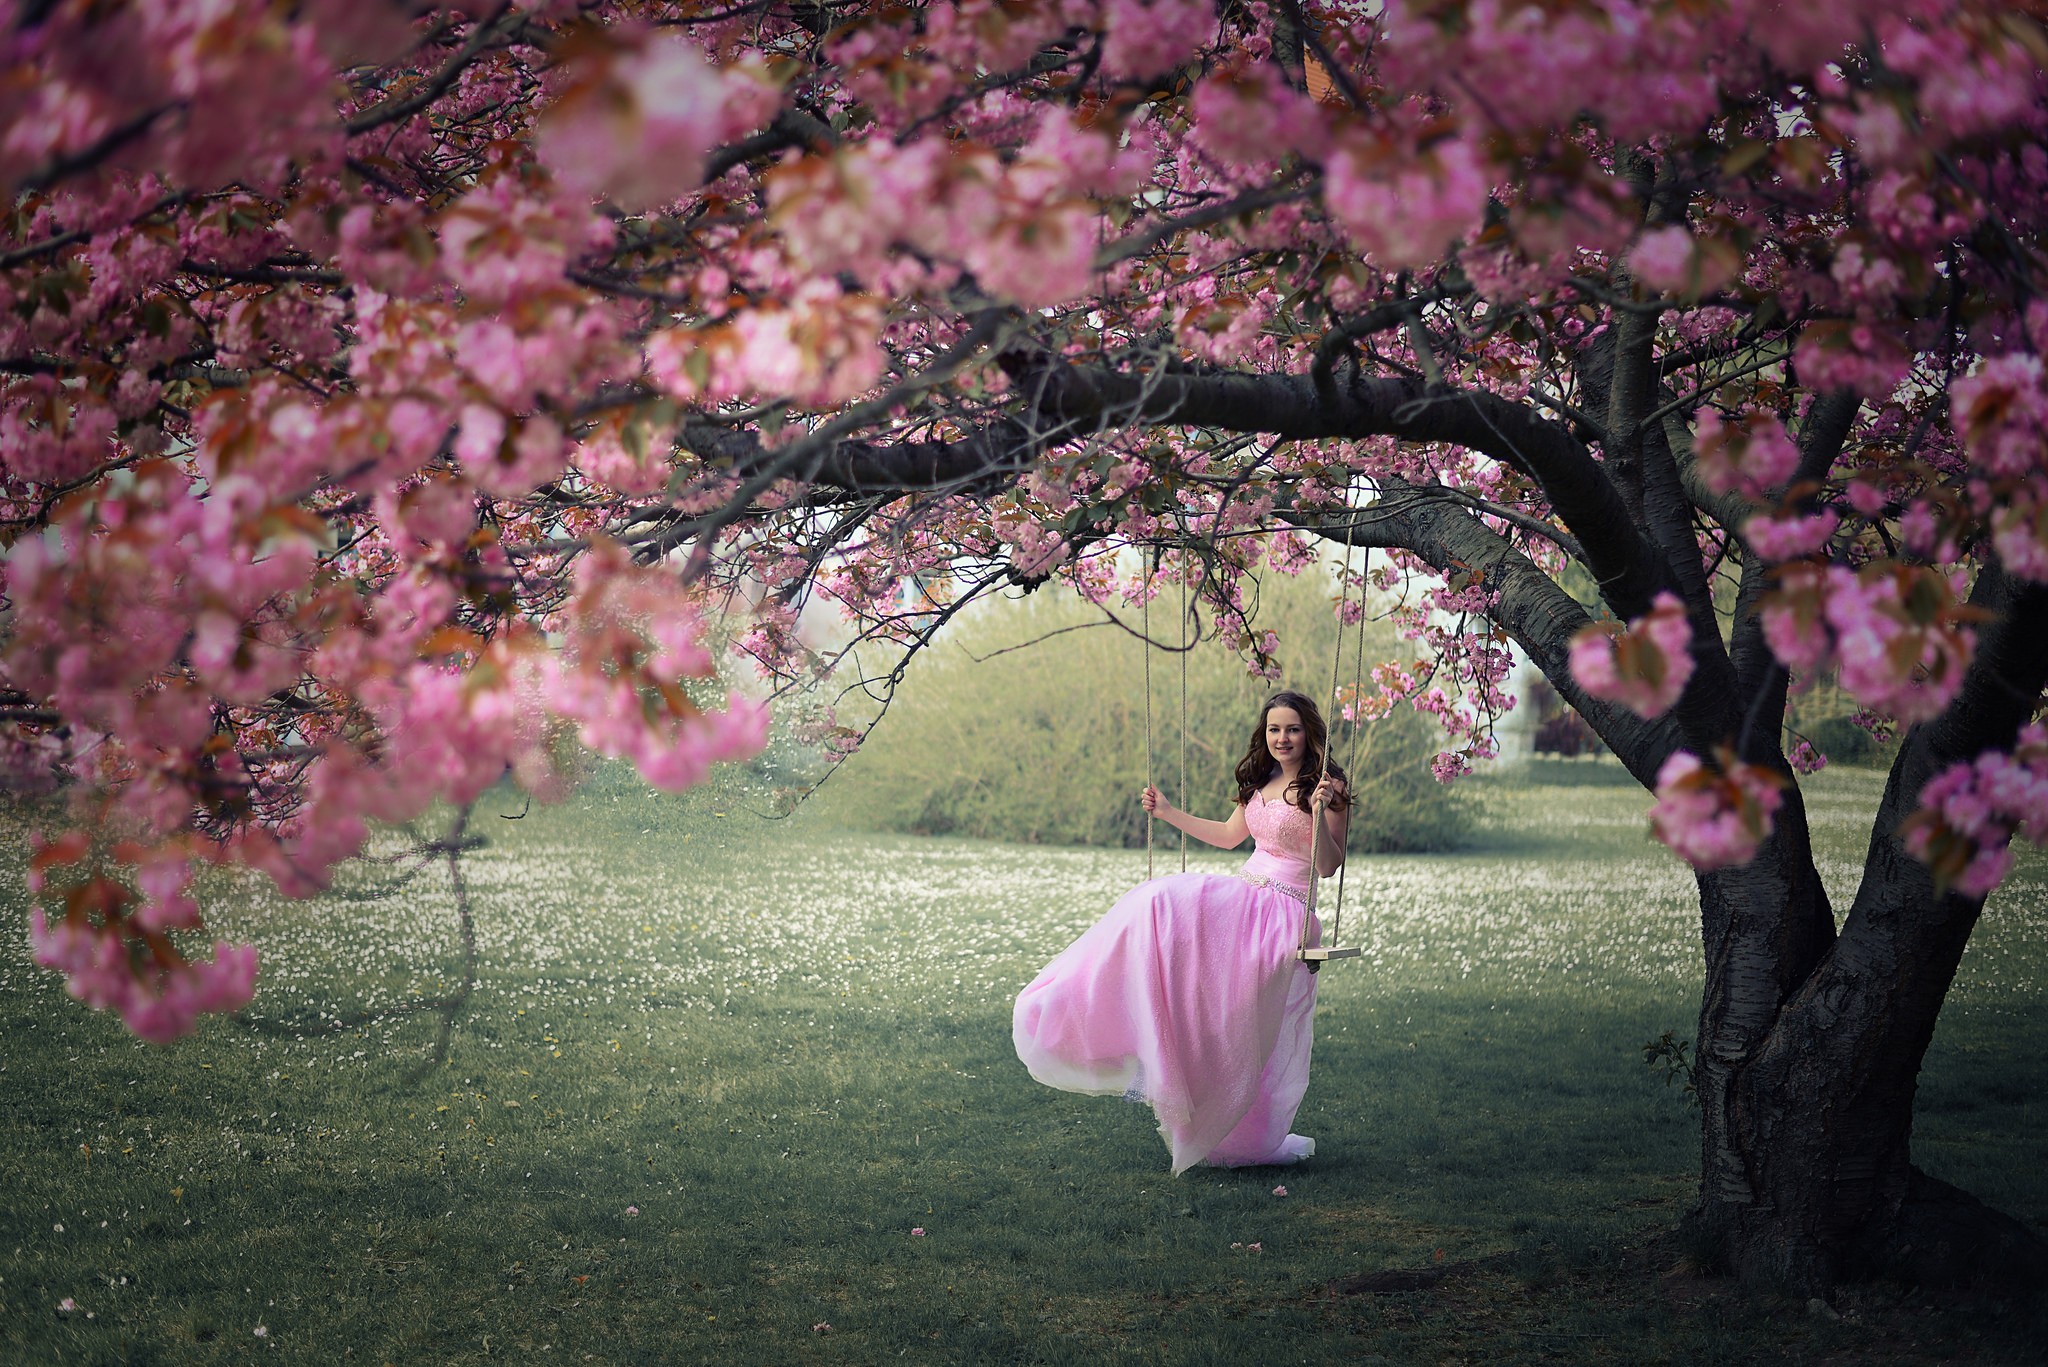 People 2048x1367 trees women outdoors women model swings pink dress dress pink clothing plants flowers